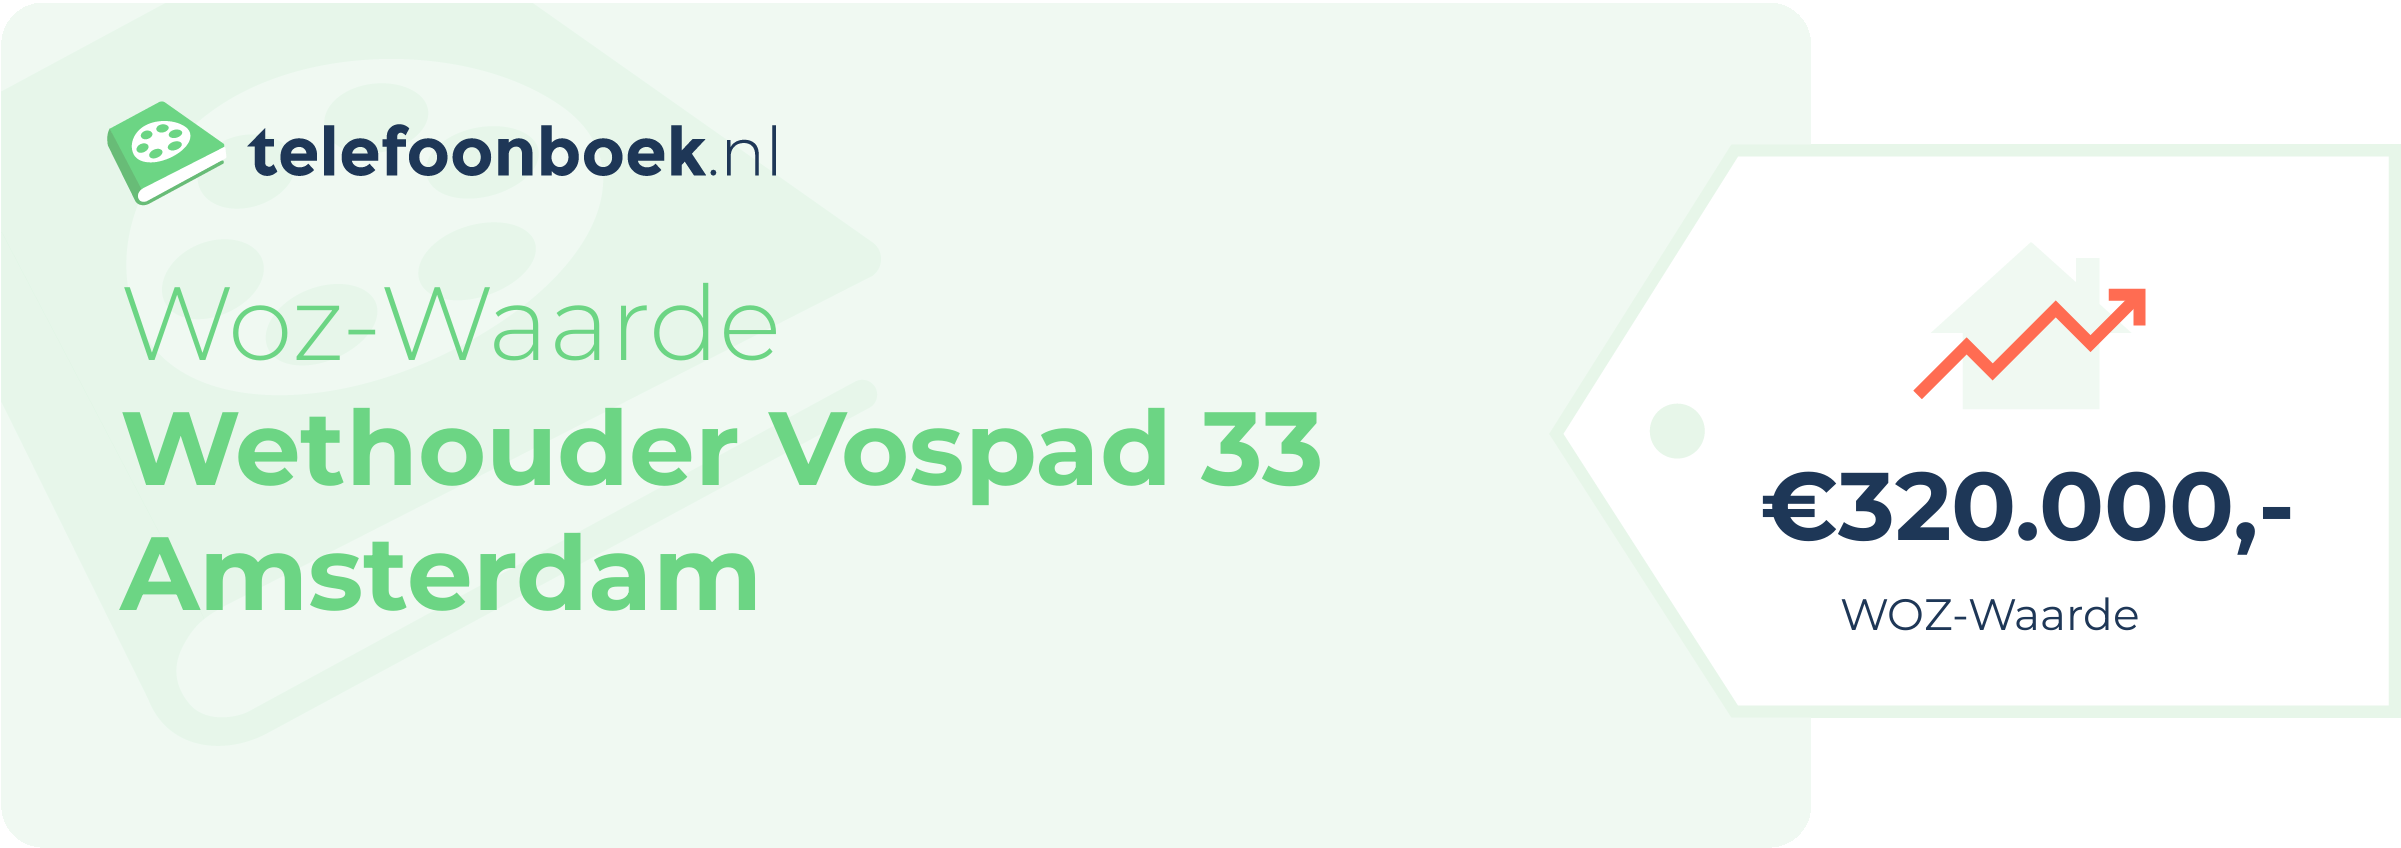 WOZ-waarde Wethouder Vospad 33 Amsterdam